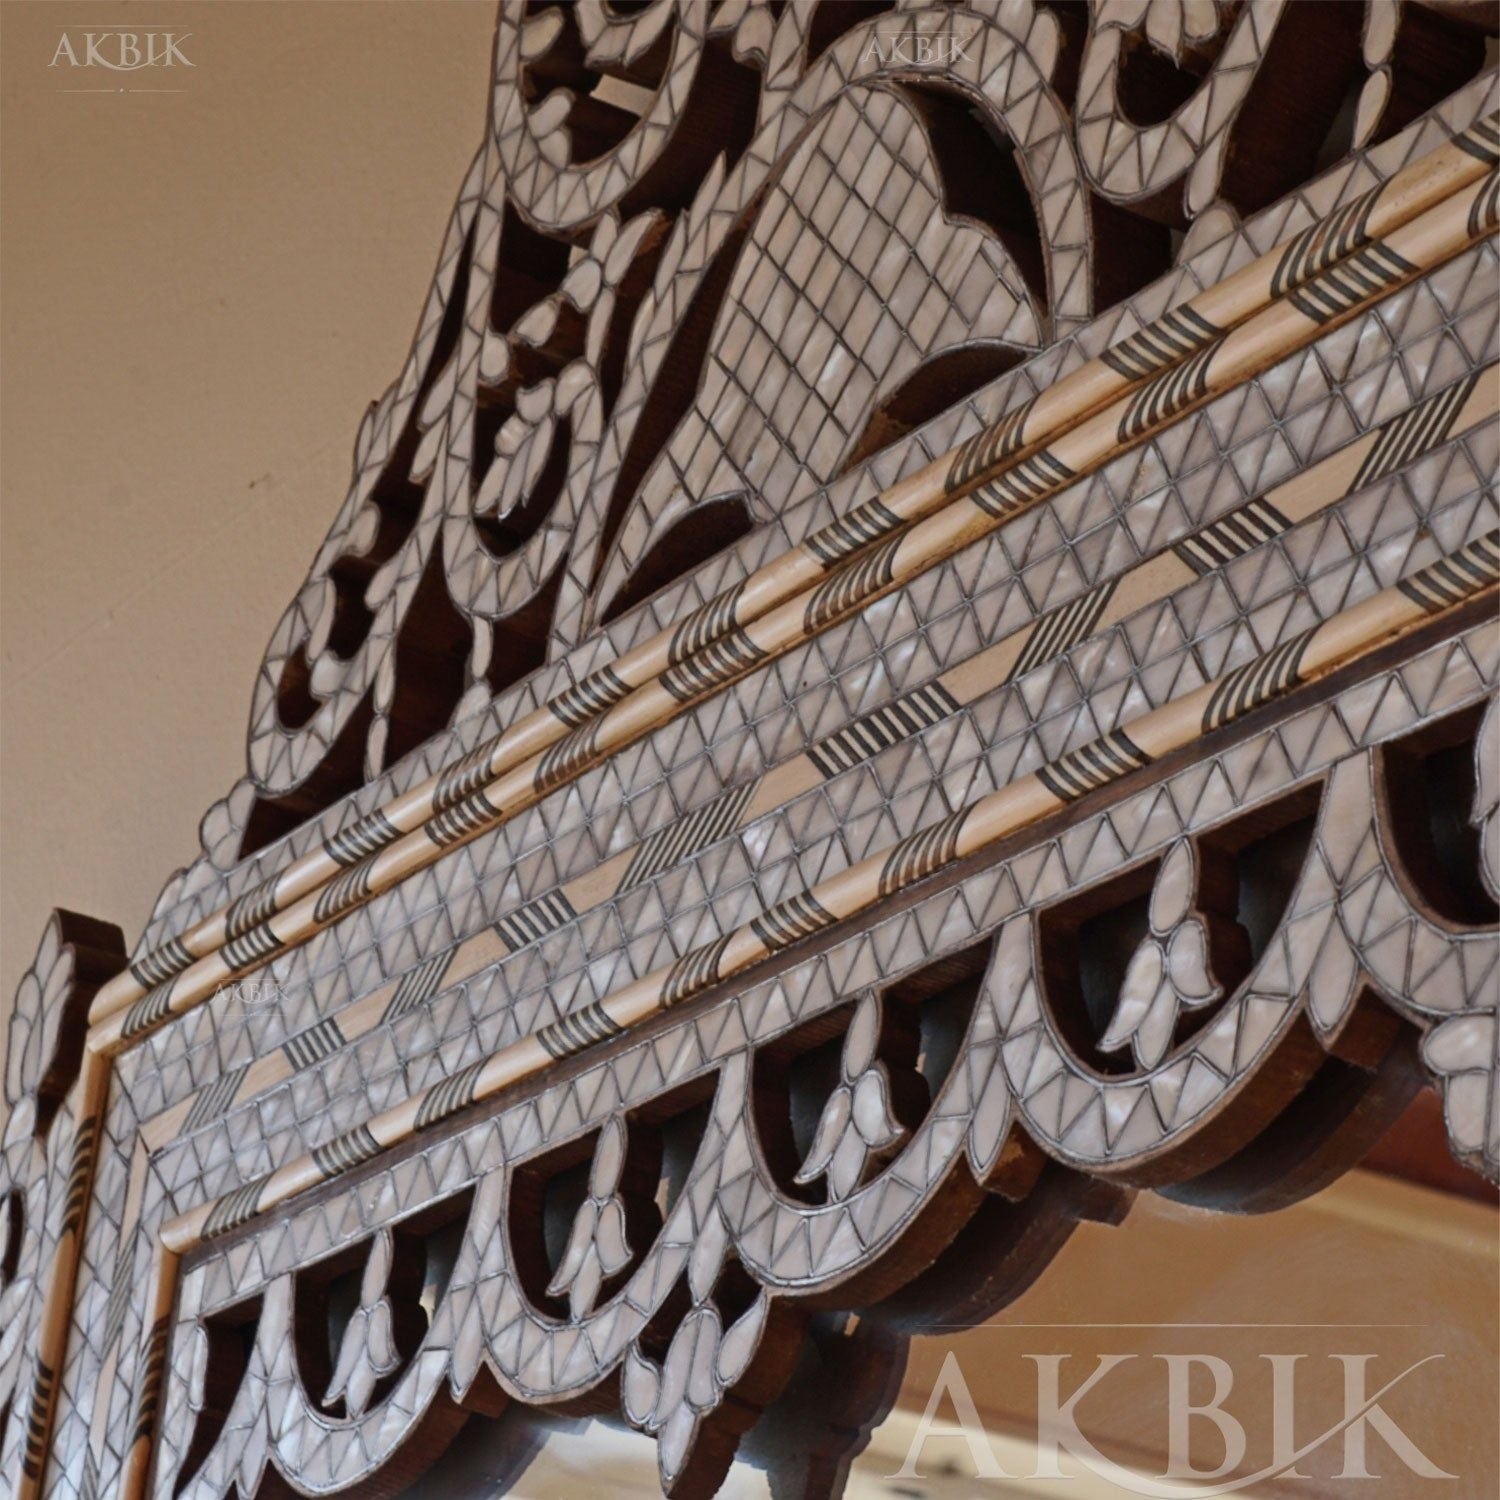 ABIZA MIRROR - AKBIK Furniture & Design